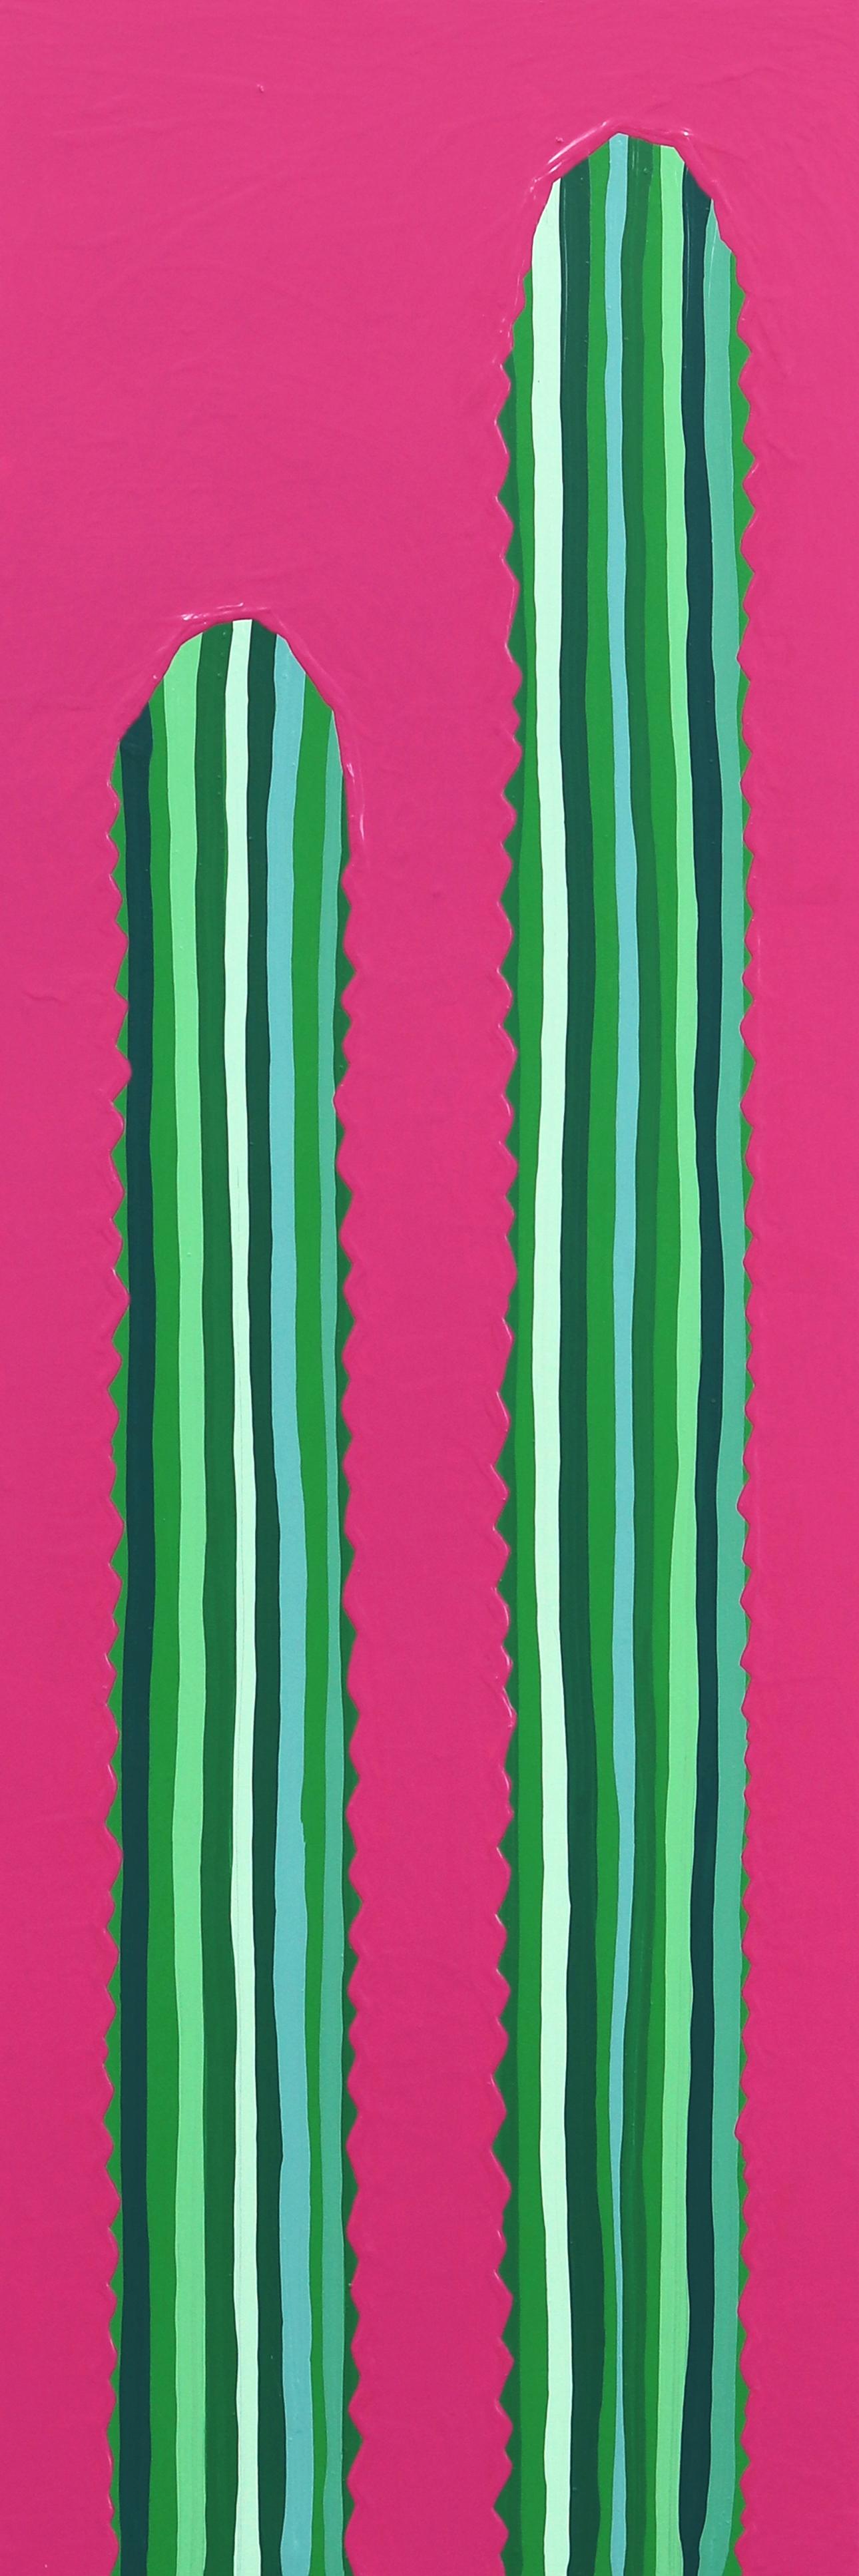 Rosa Picante – lebhaftes rosa-grünes, vom Südwesten inspiriertes Pop-Art-Kactus-Gemälde